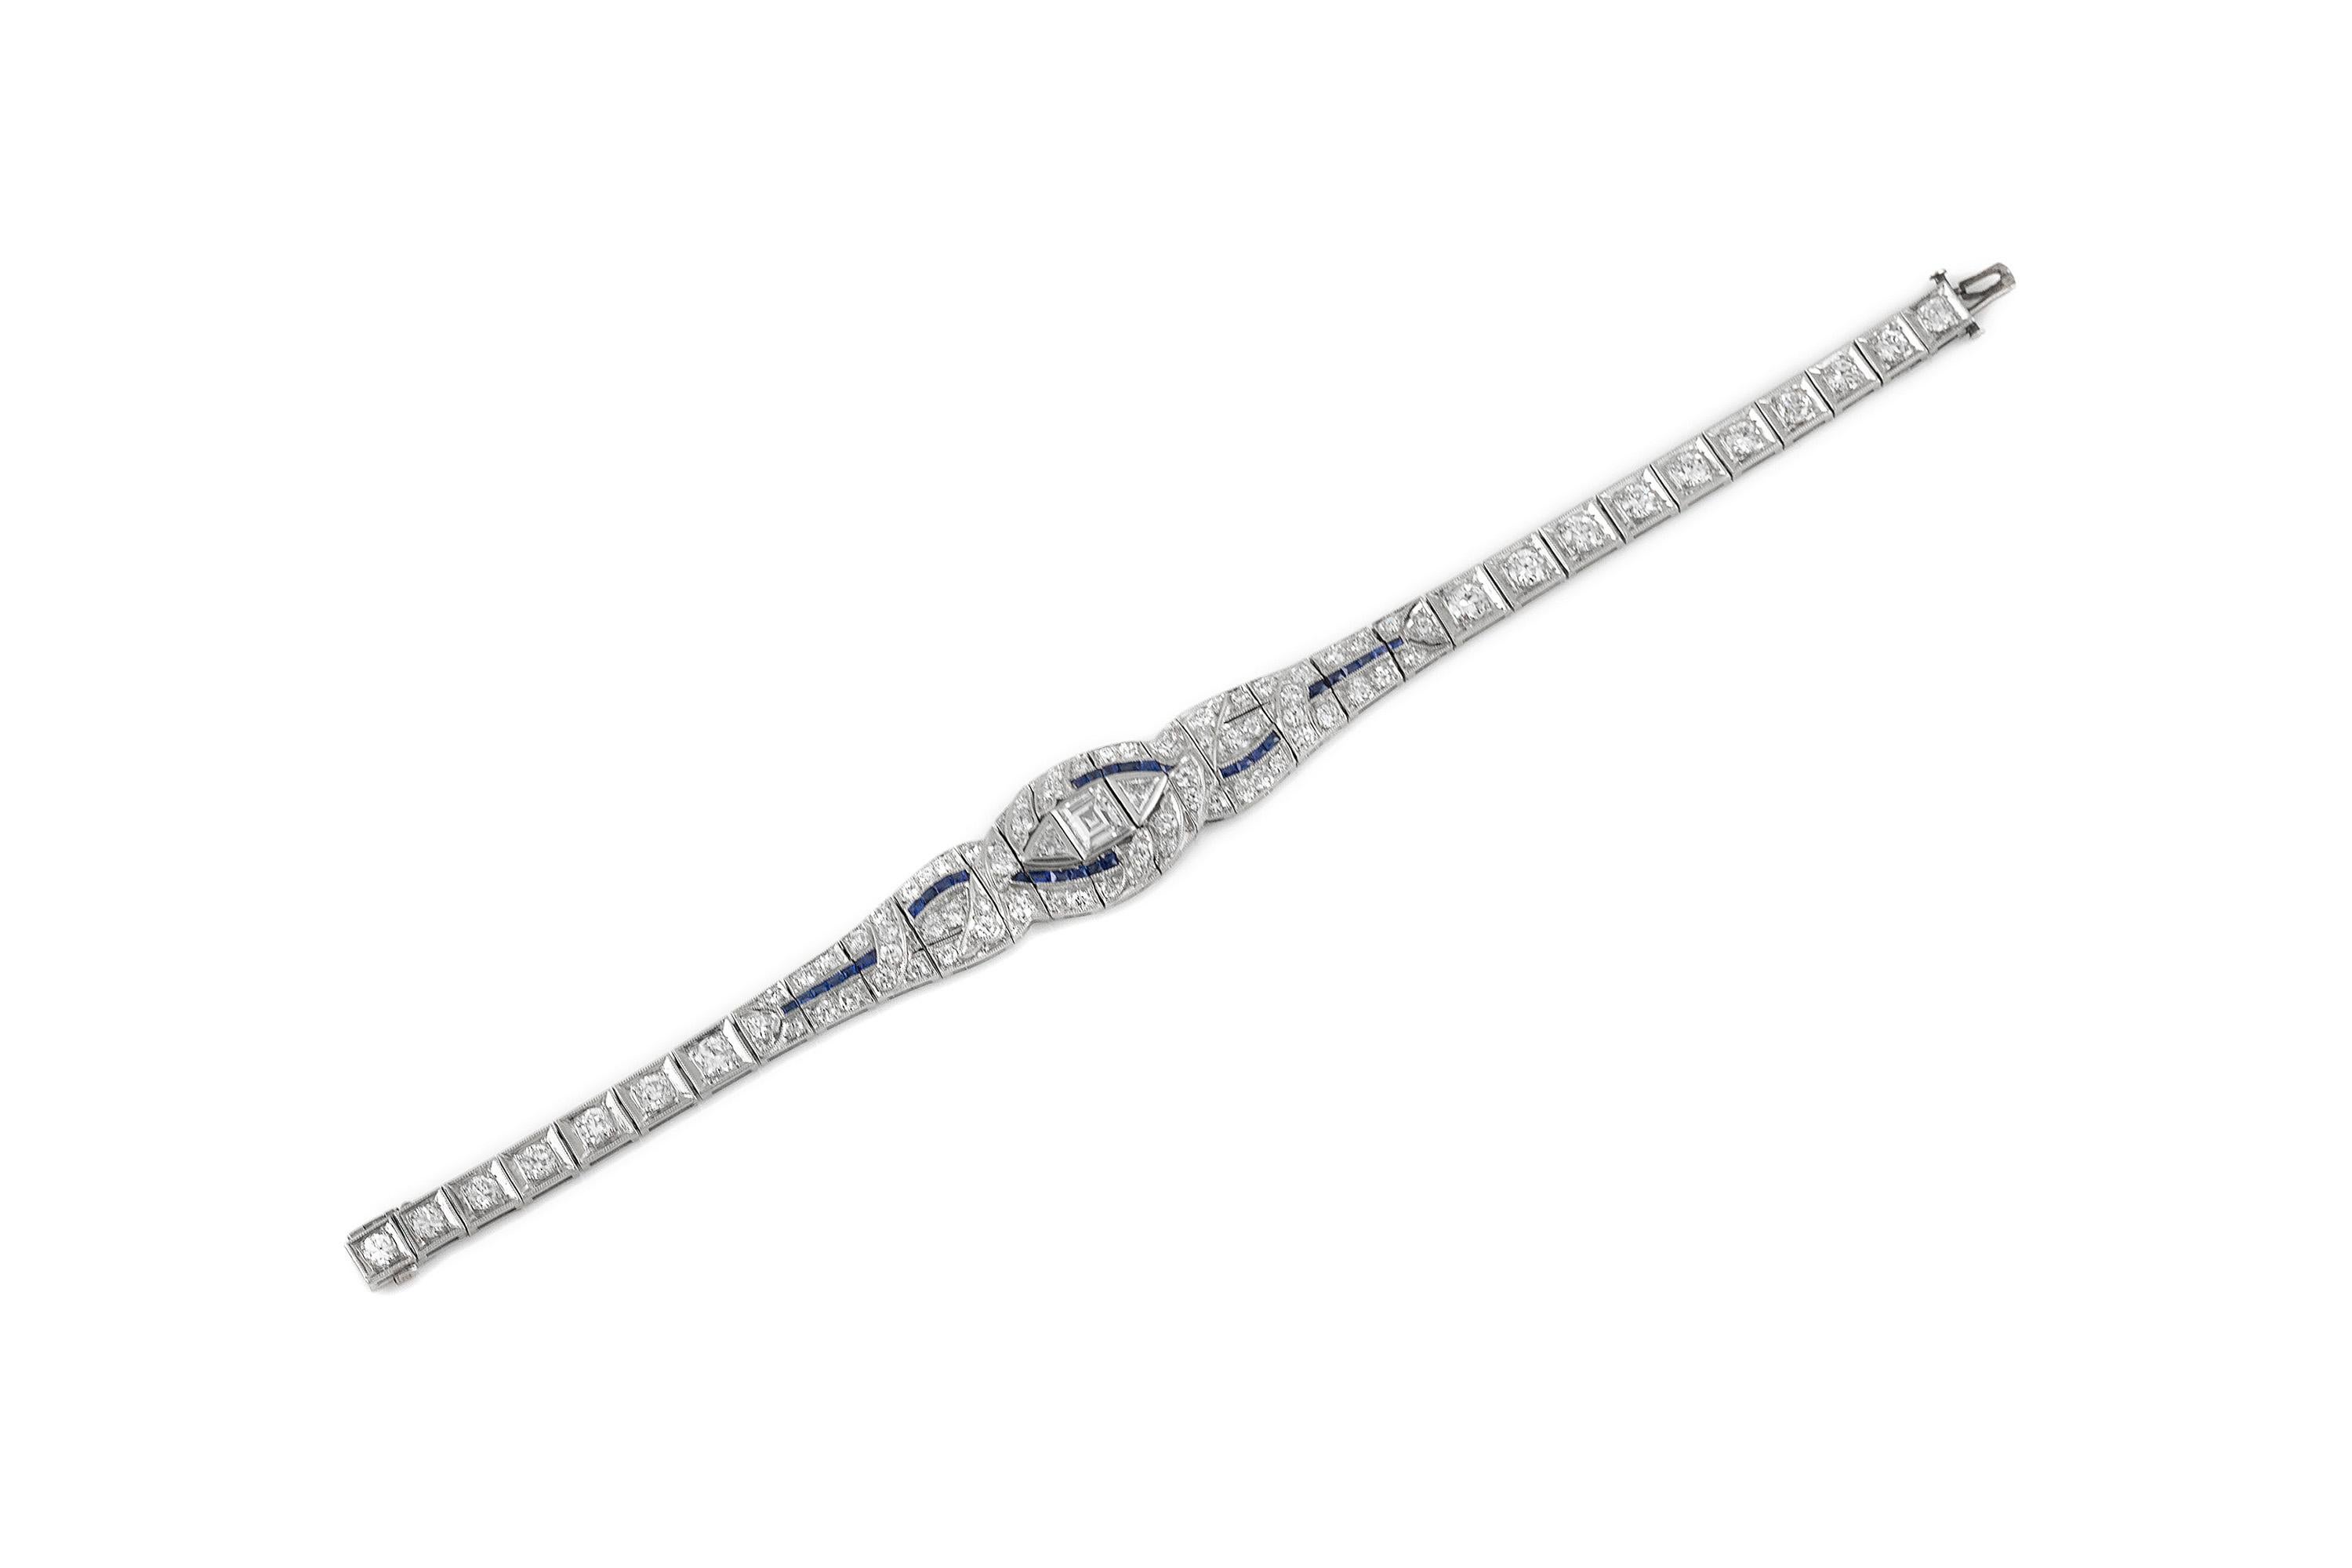 Das Armband ist fein in Platin mit Saphiren mit einem Gesamtgewicht von etwa 1,00 und Diamanten mit einem Gesamtgewicht von etwa 7,00 Karat gefertigt.
Farbe G/H
Klarheit VS1